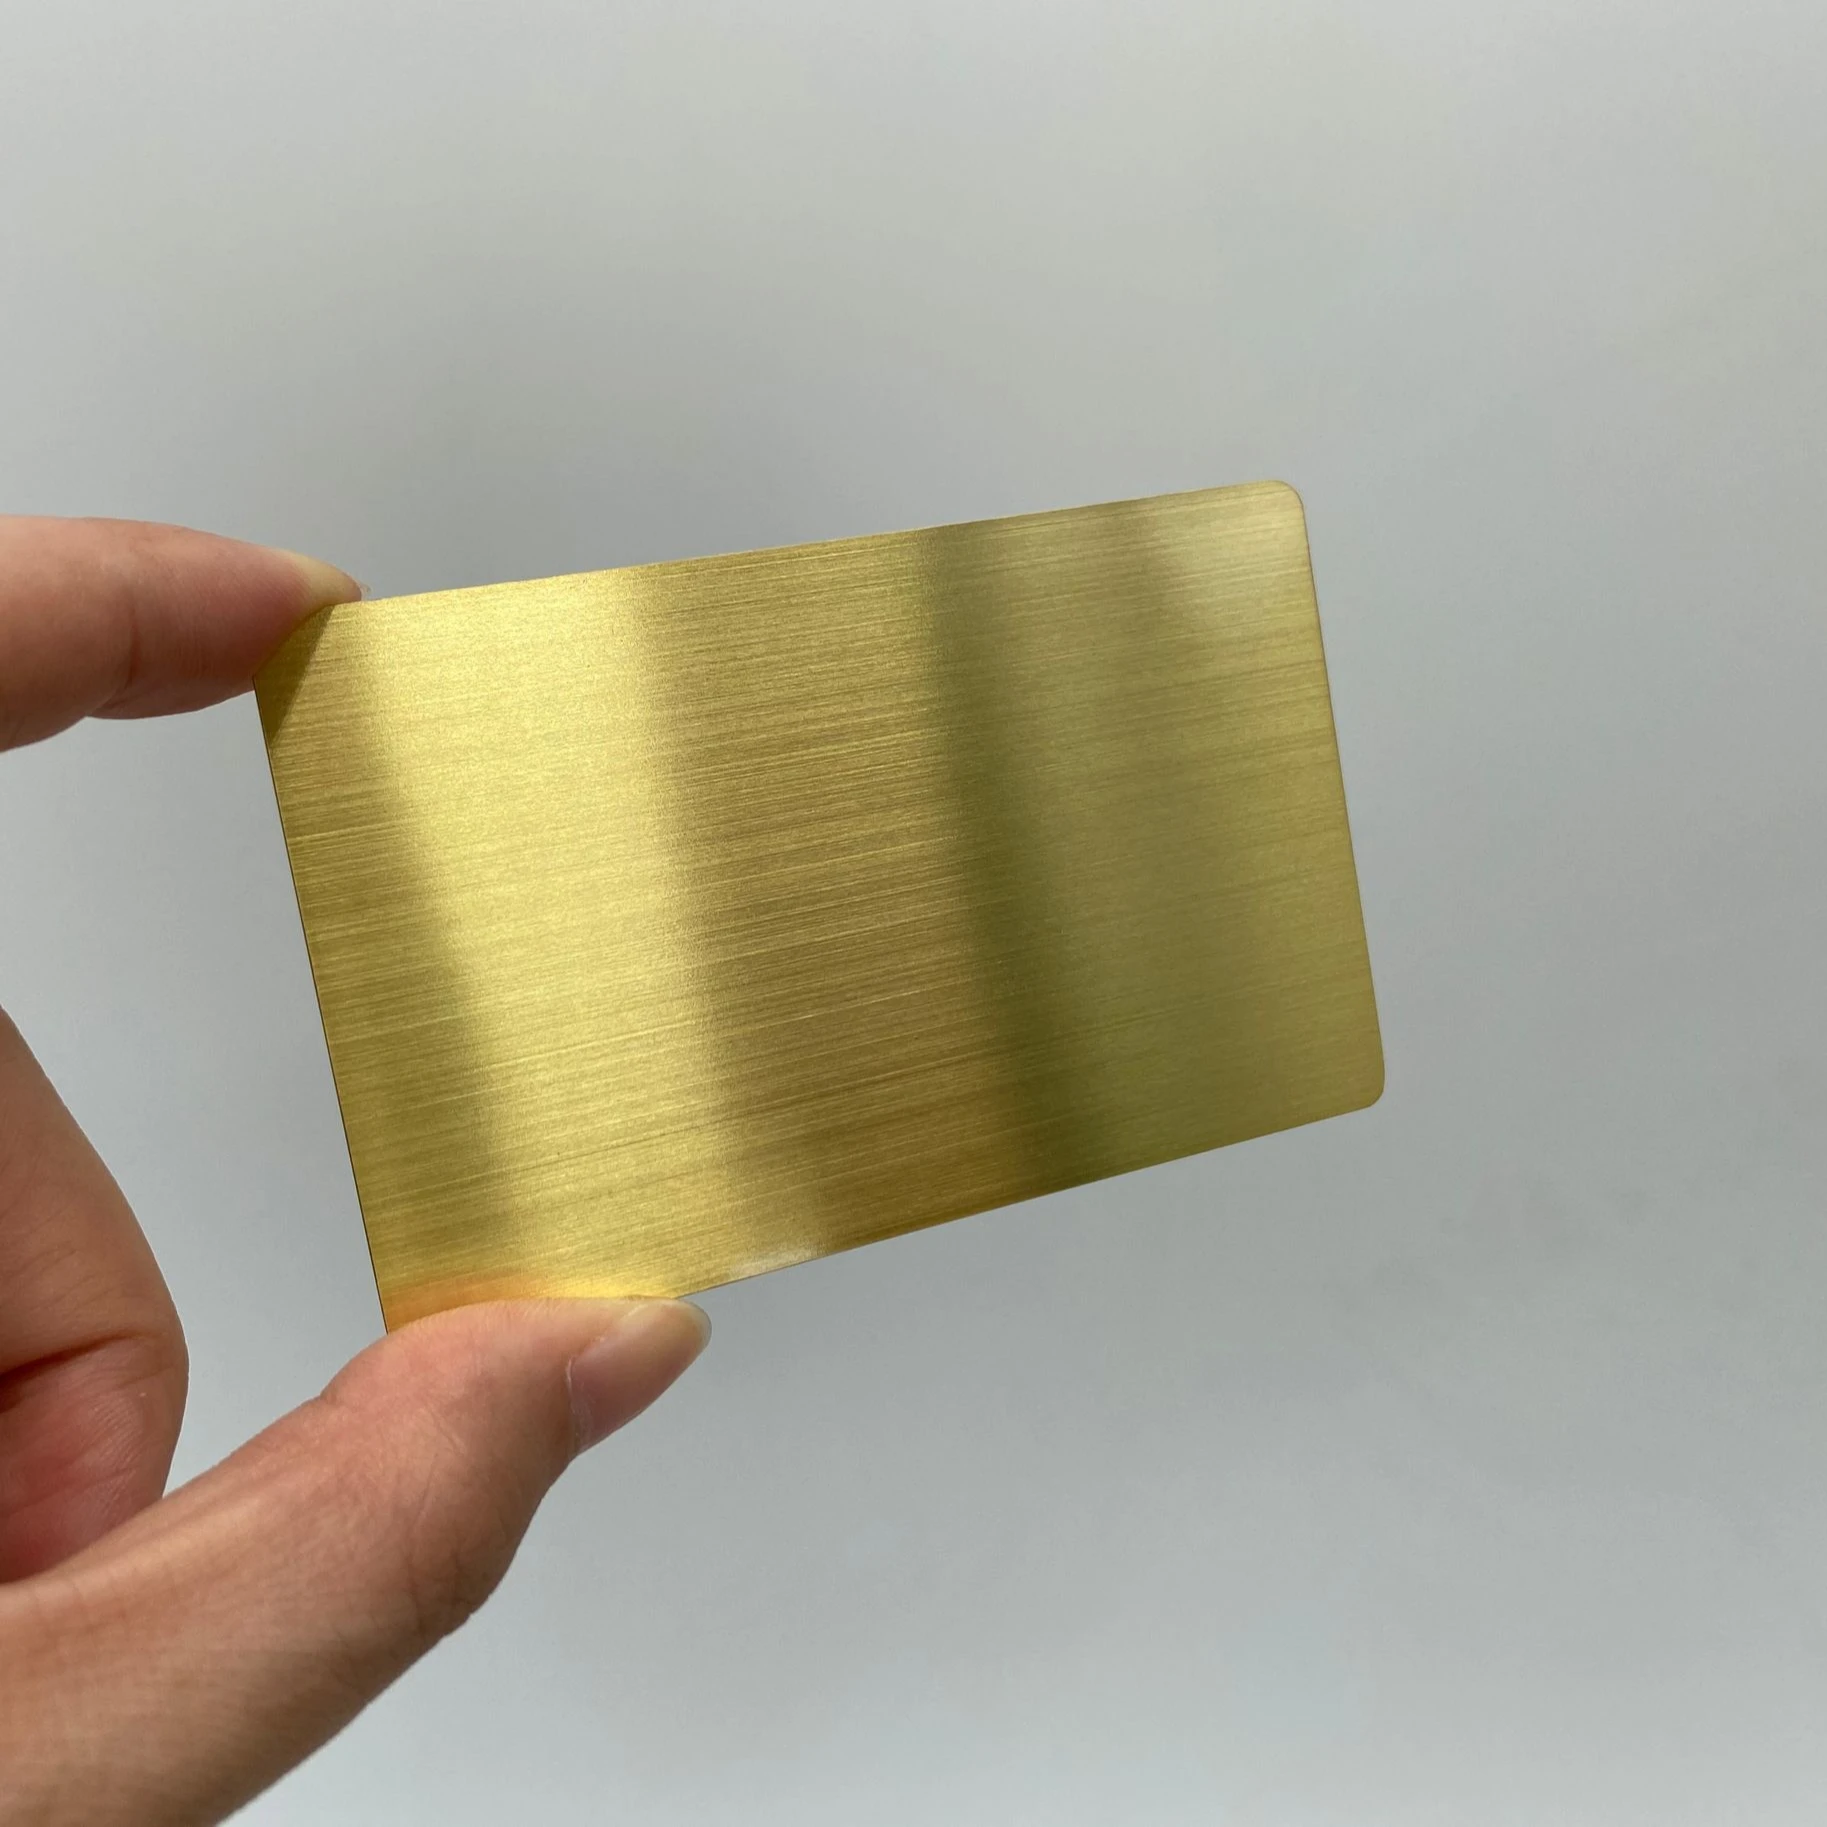 

DU blank steel gold metal cards, Cmyk or pantone